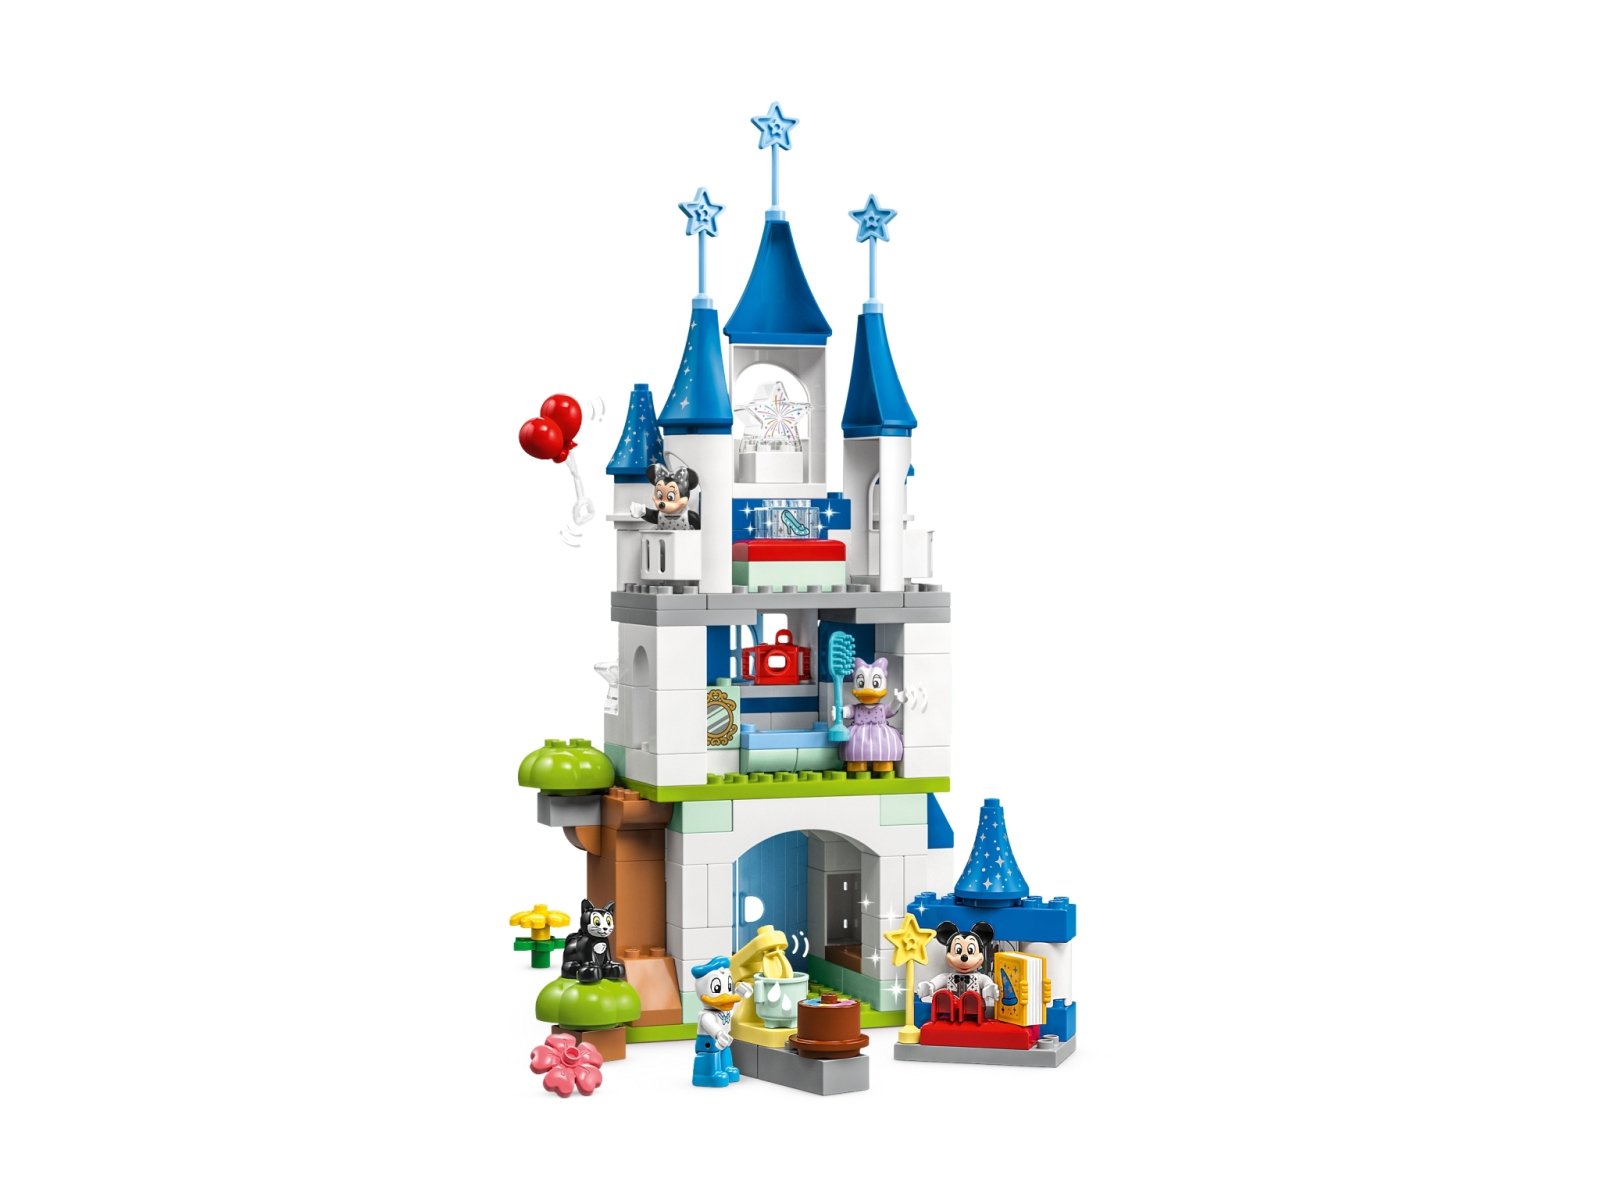 LEGO Duplo Magiczny zamek 3 w 1 10998